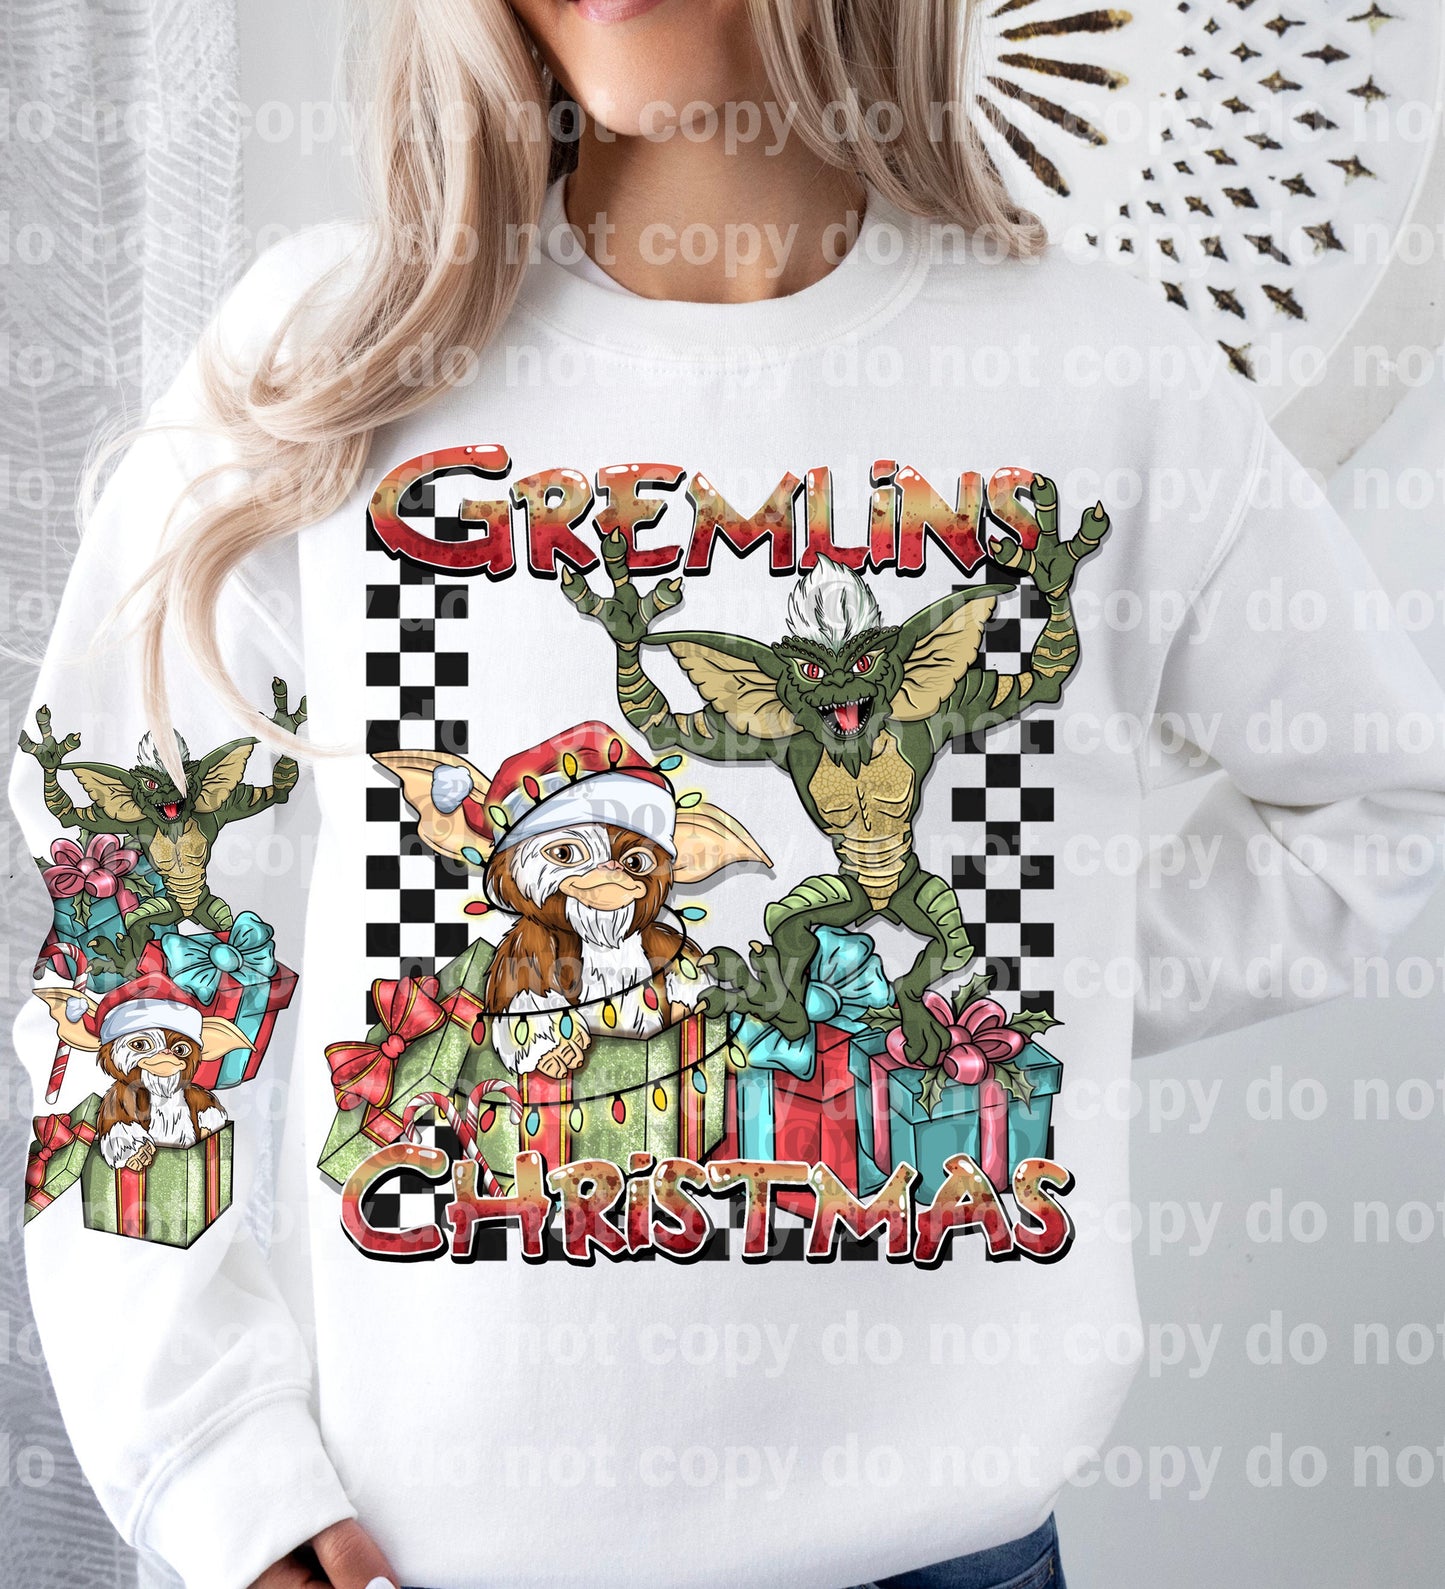 Navidad de Gremlins con diseño de manga opcional Impresión de ensueño o impresión por sublimación